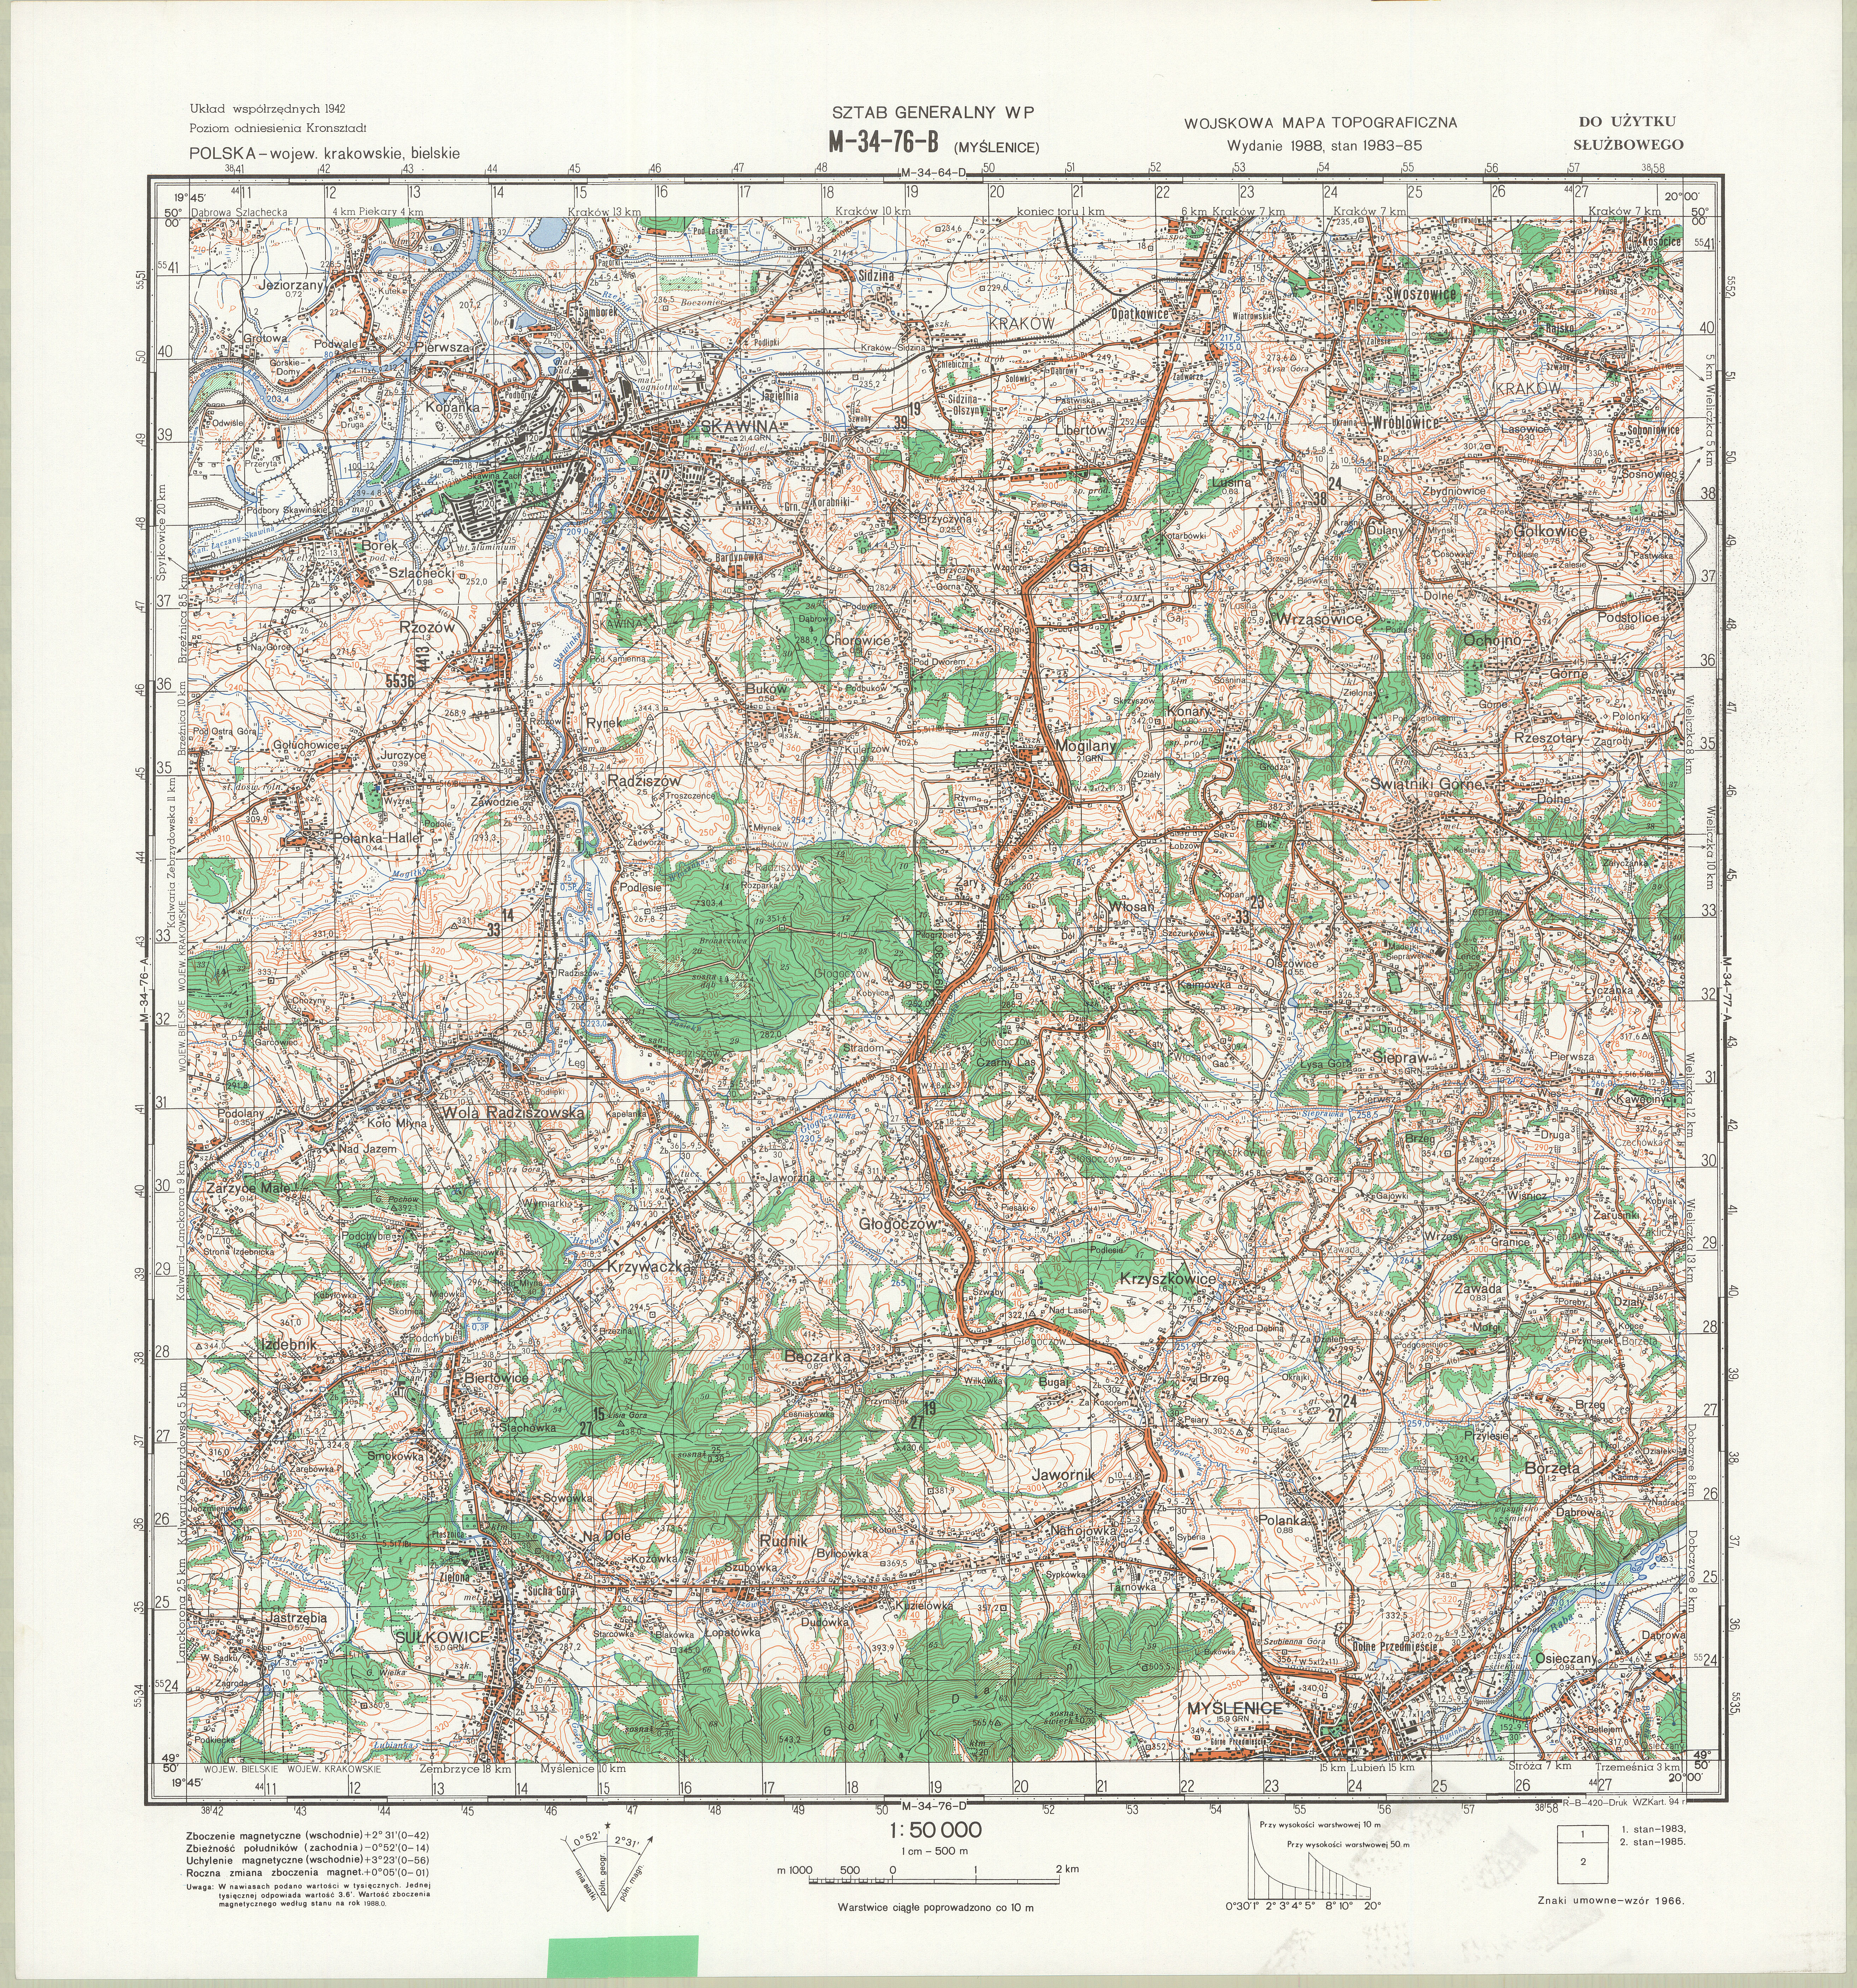 Mapy topograficzne LWP 1_50 000 - M-34-76-B_MYSLENICE_1994.jpg